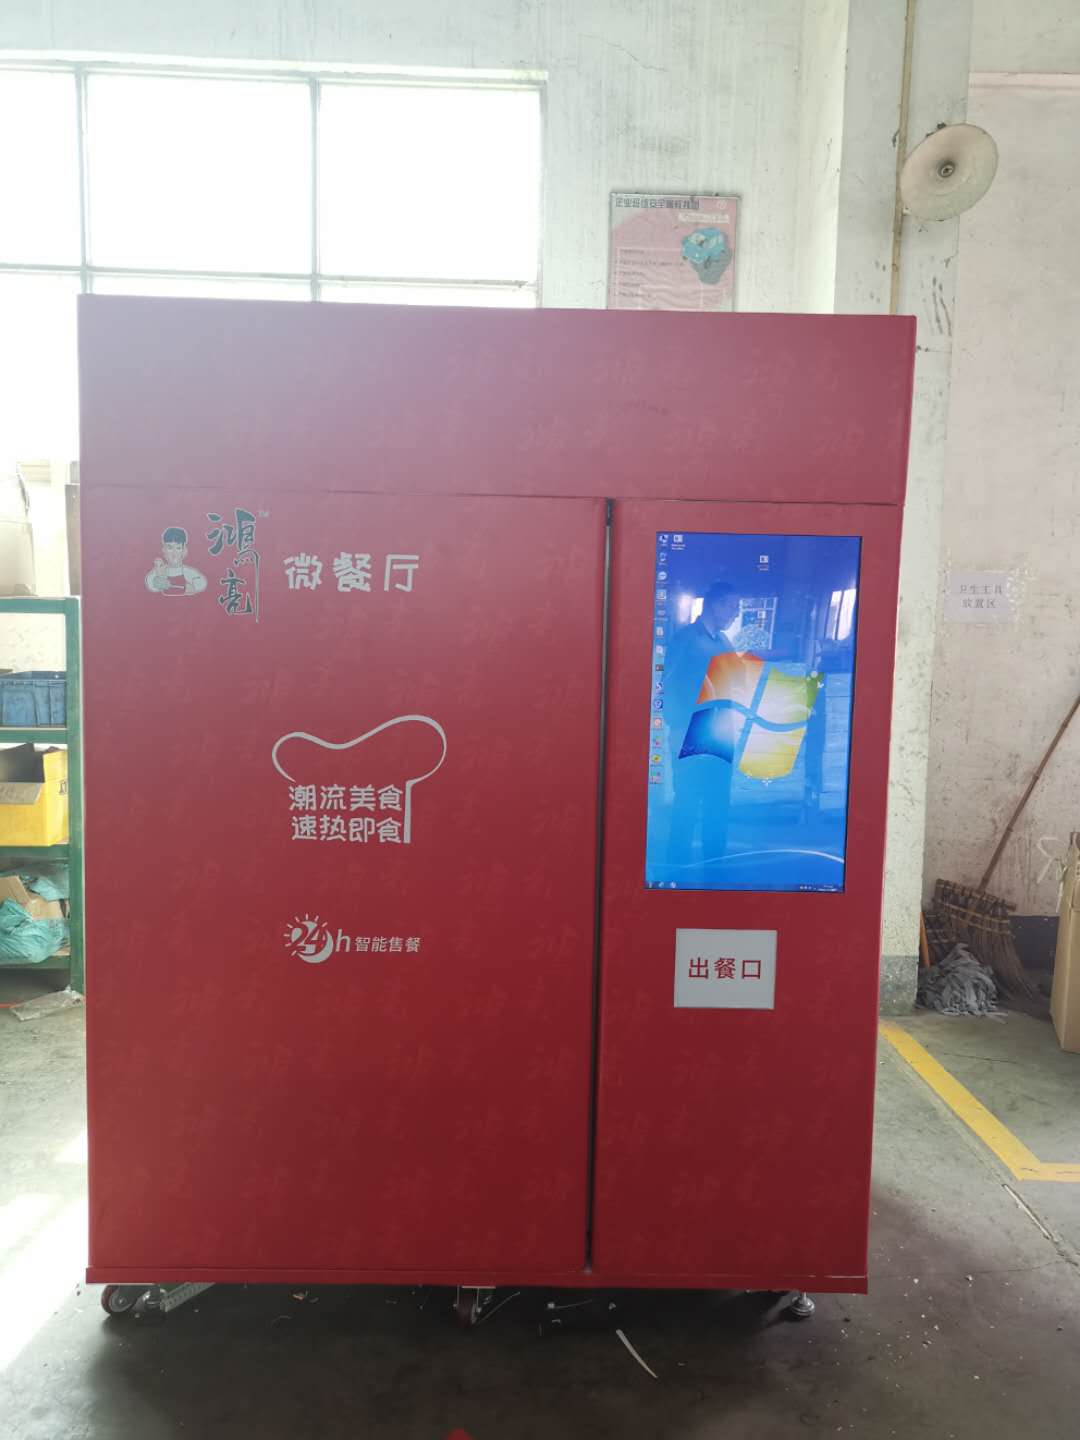 Máquina automática de venda automática de pizza